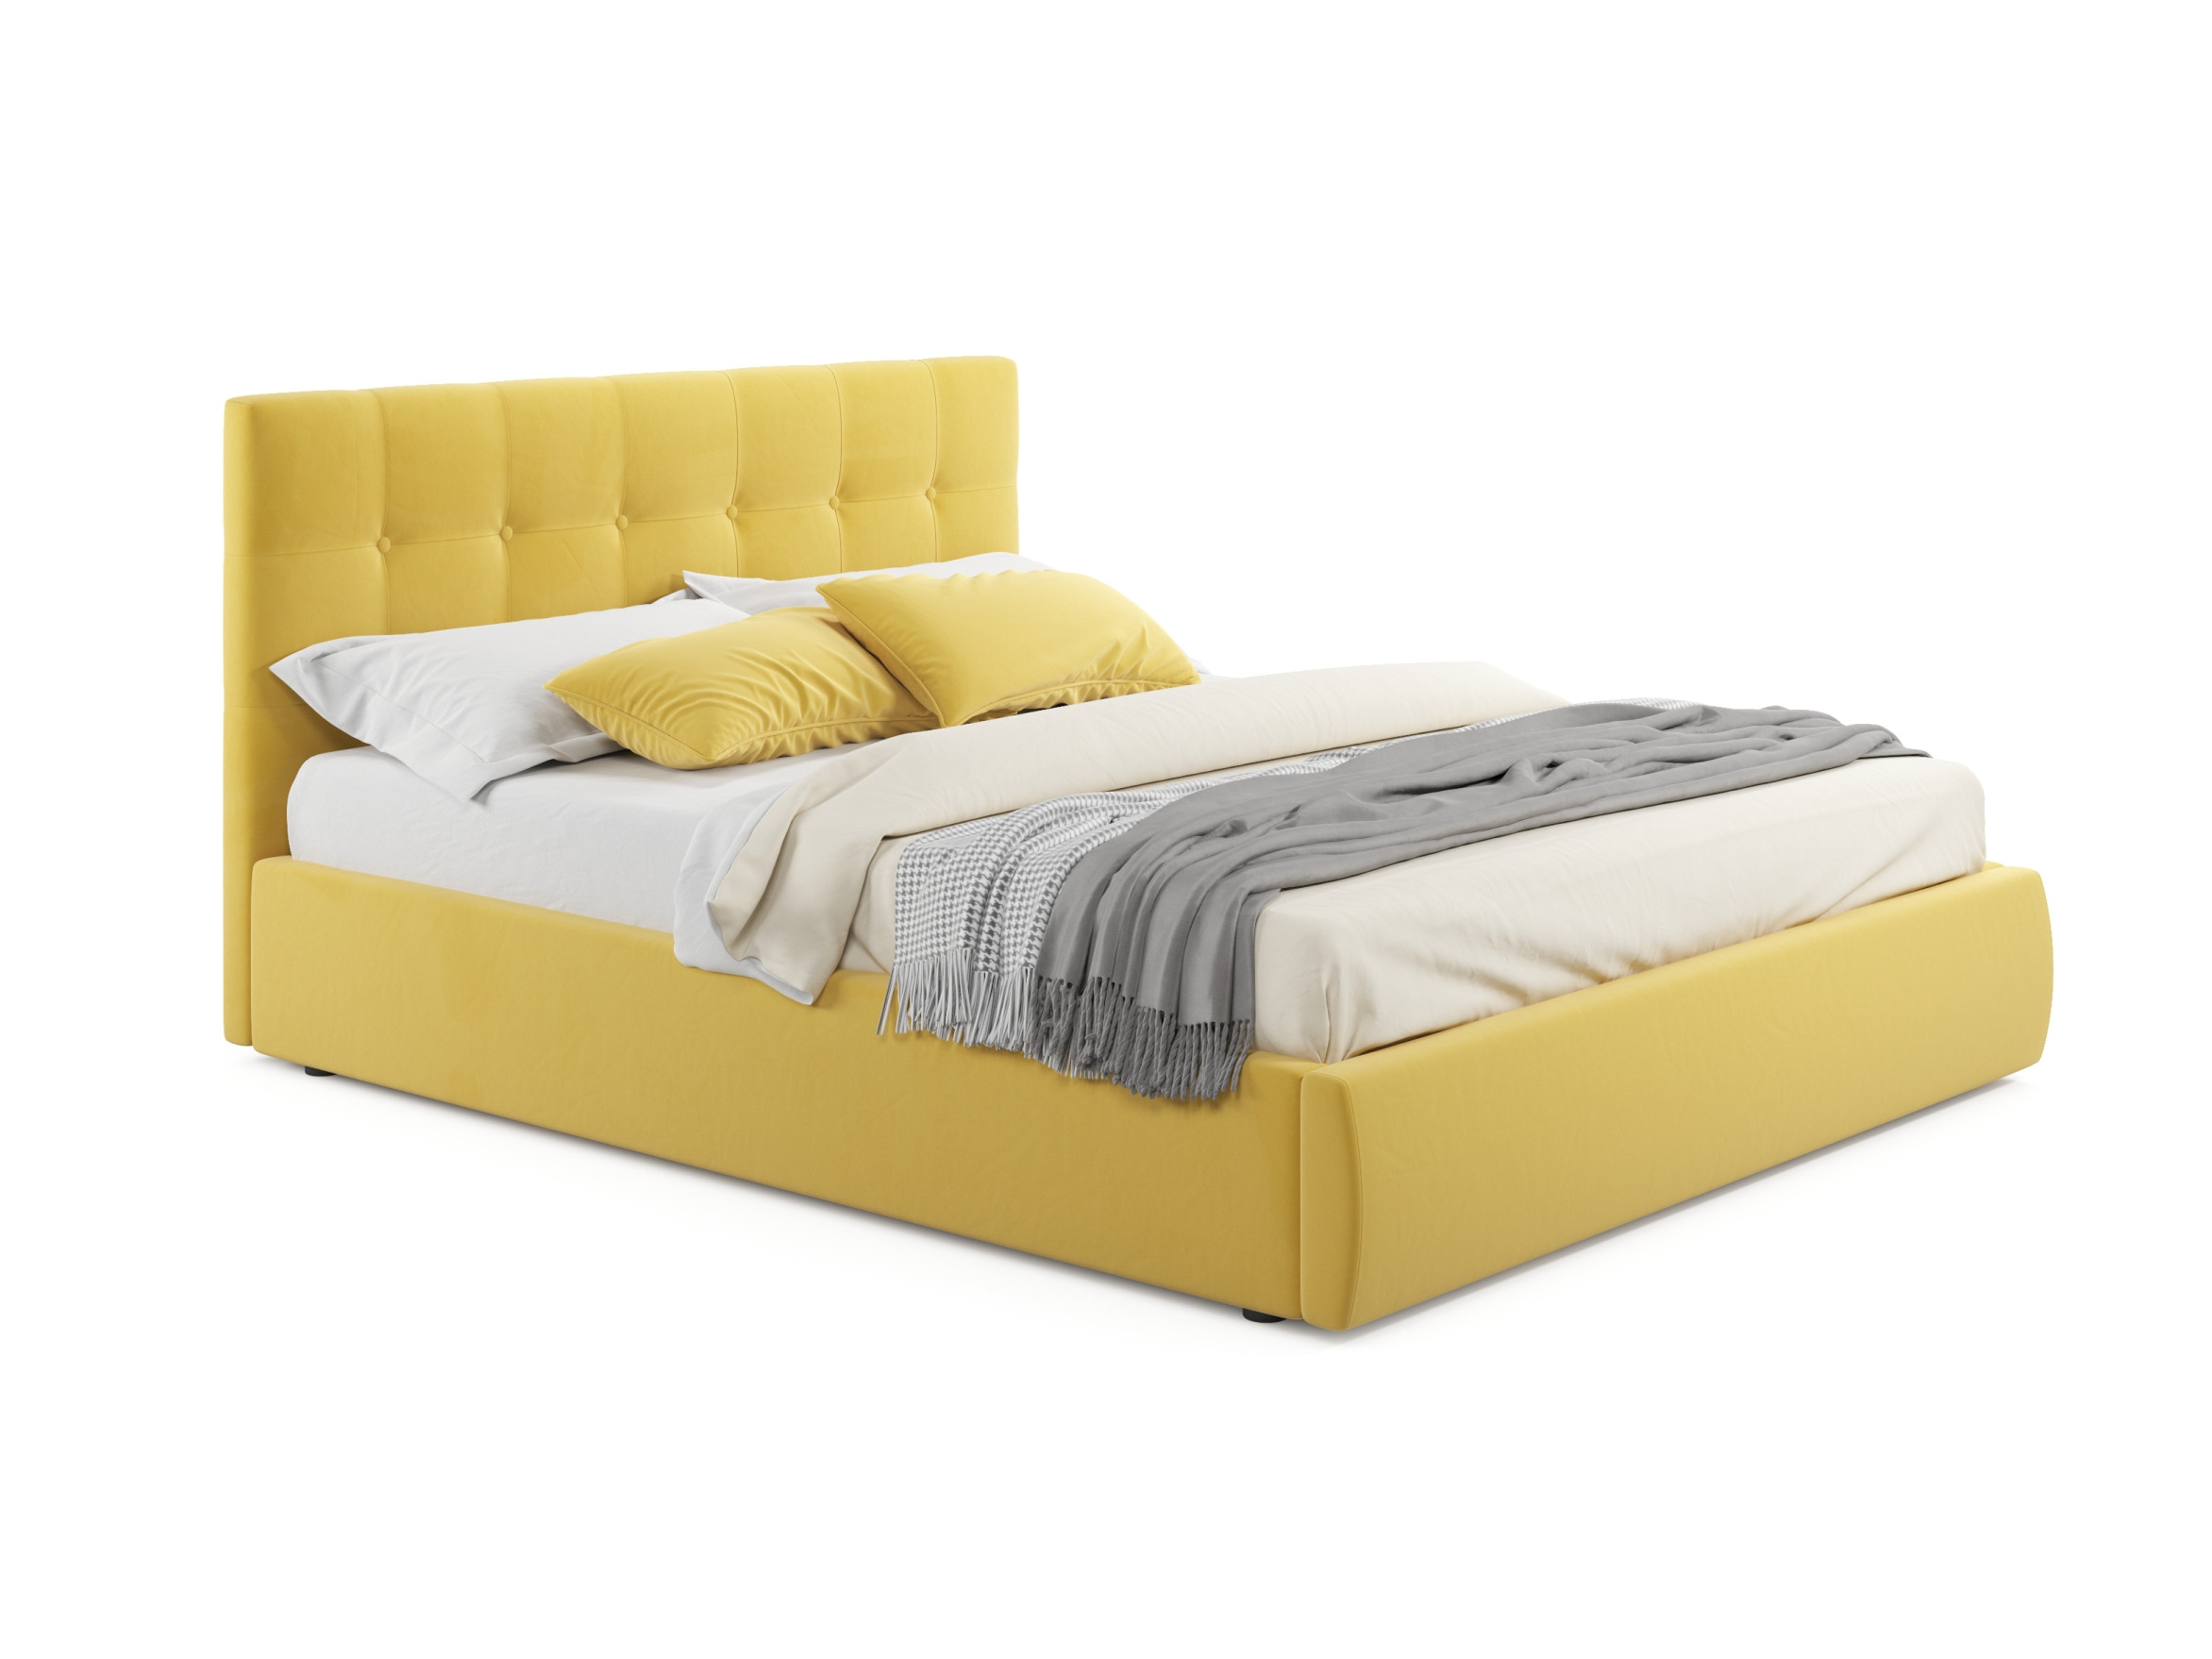 Мягкая кровать Selesta 1600 желтая с матрасом АСТРА с подъем мягкая кровать selesta 1800 желтая с матрасом гост с подъемным механизмом желтый желтый велюр дсп